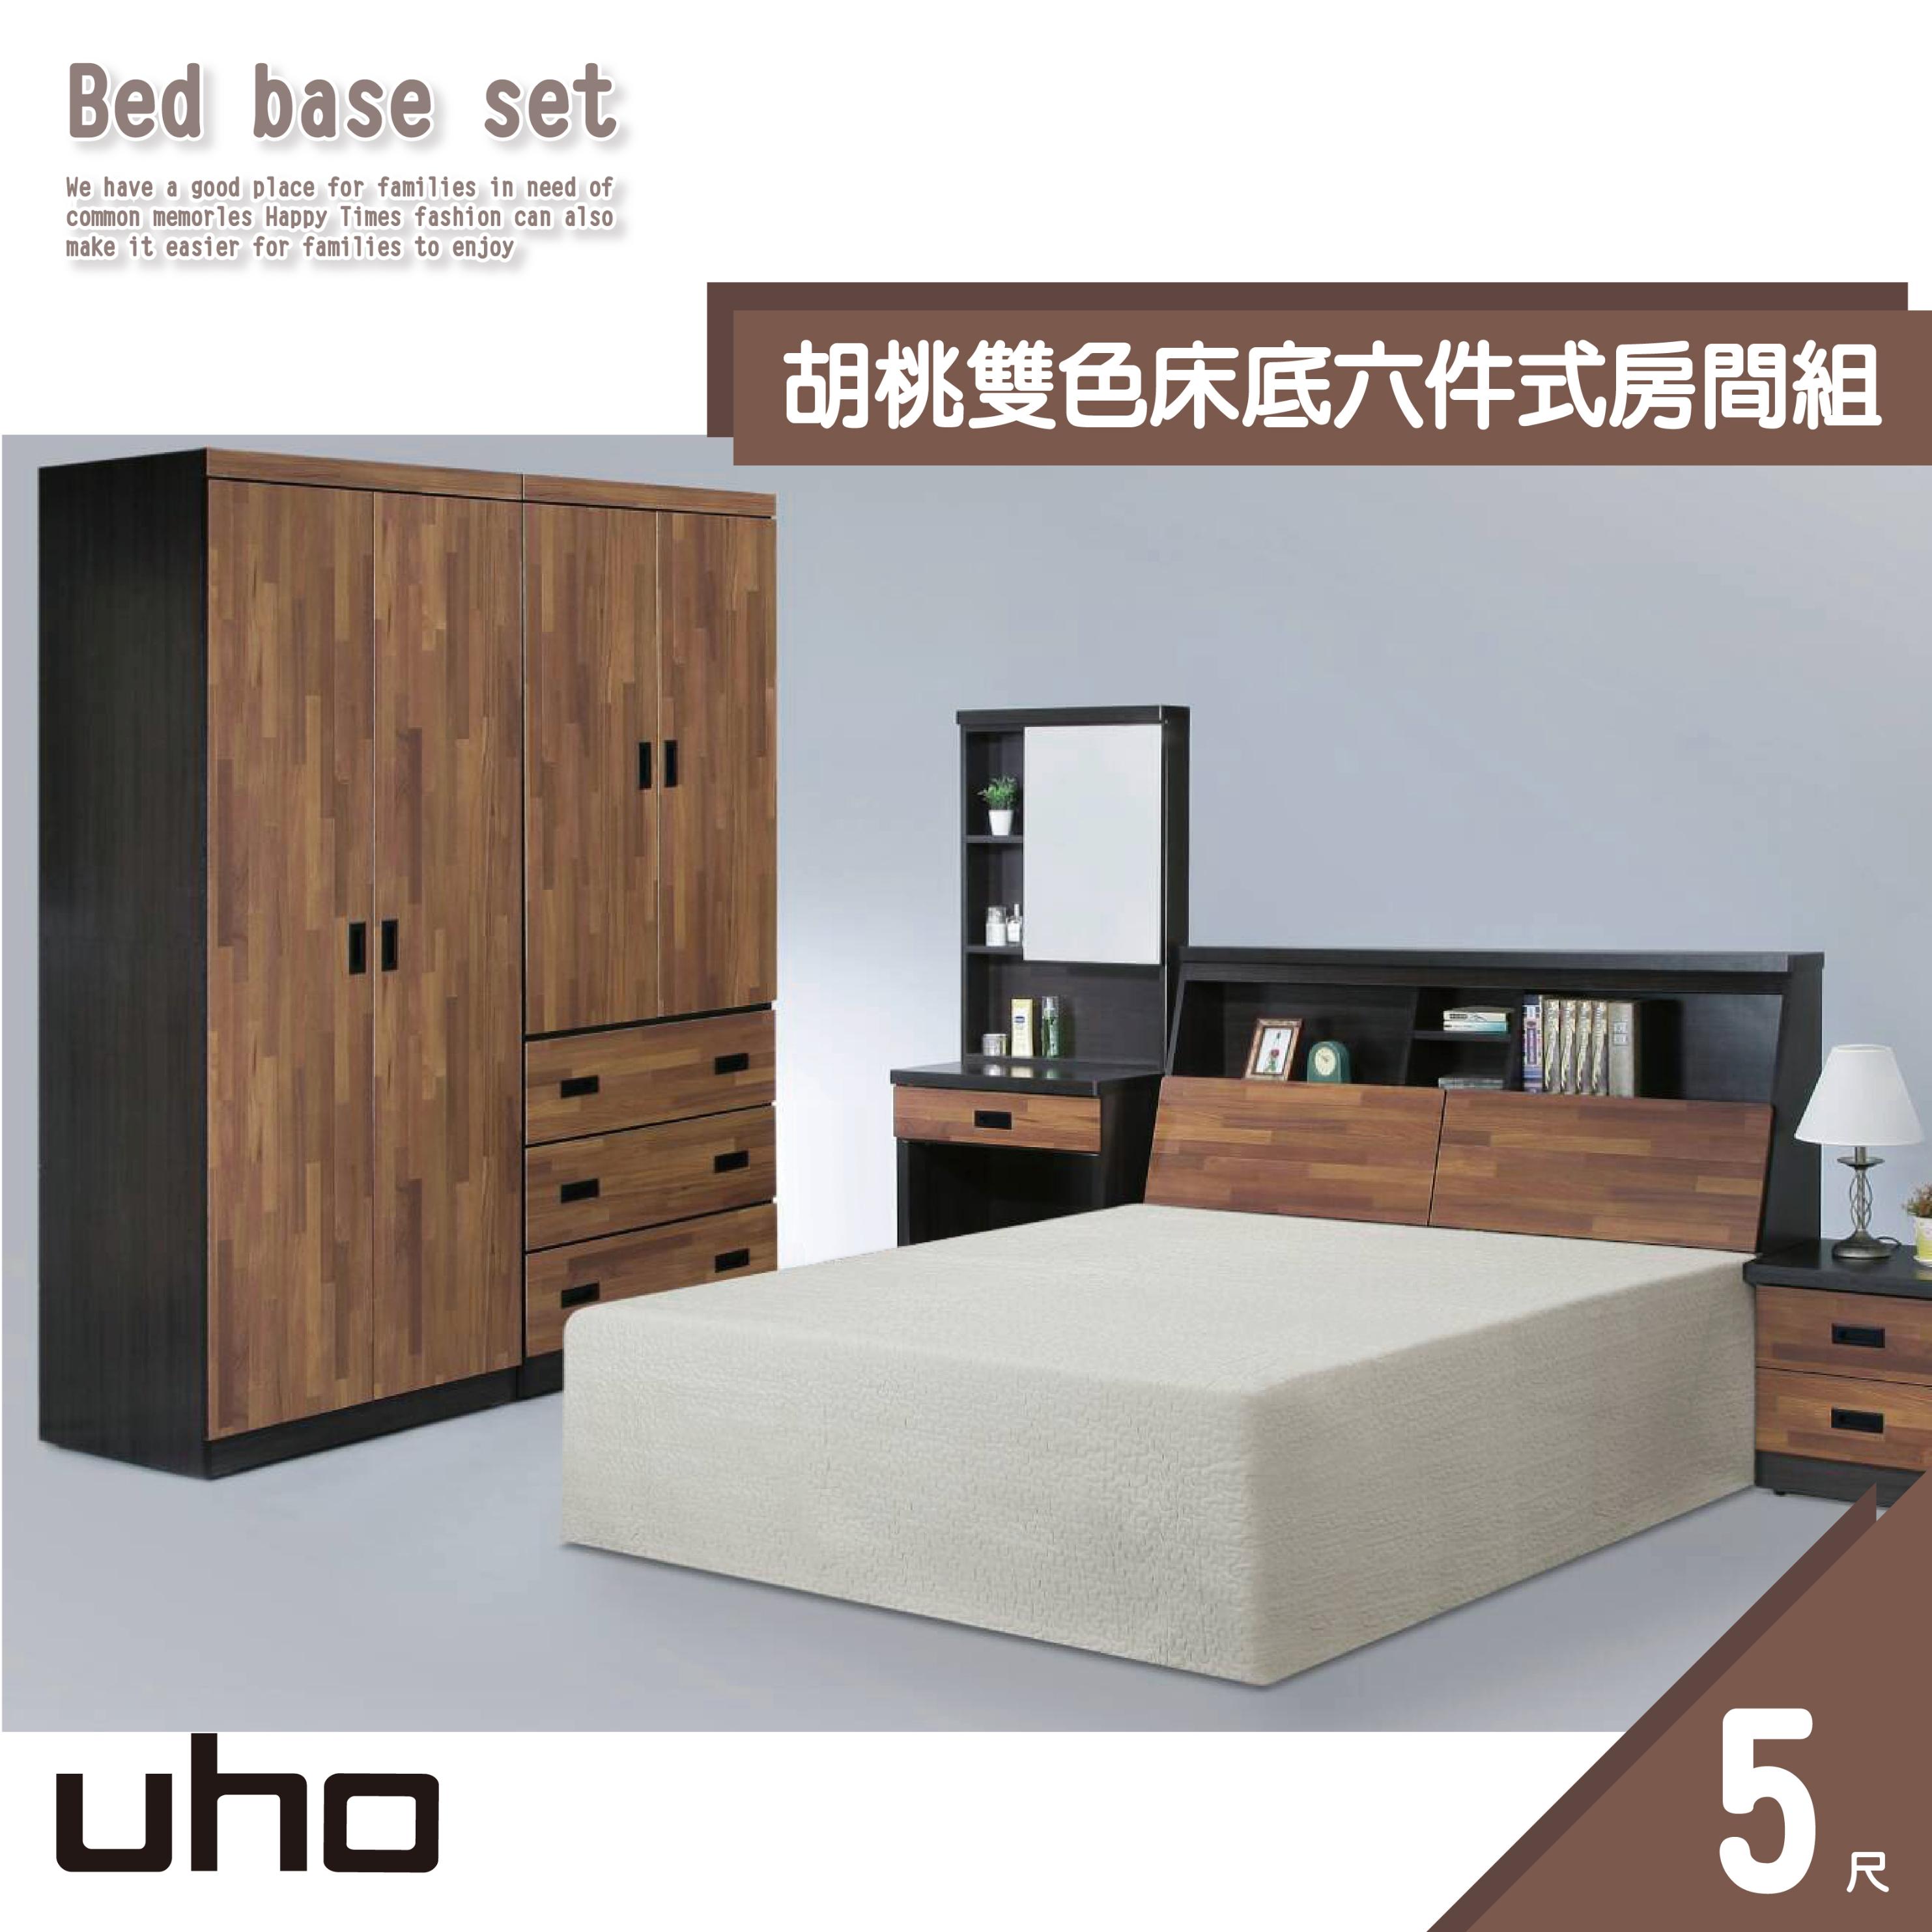 床組【UHO】胡桃雙色5尺6件組